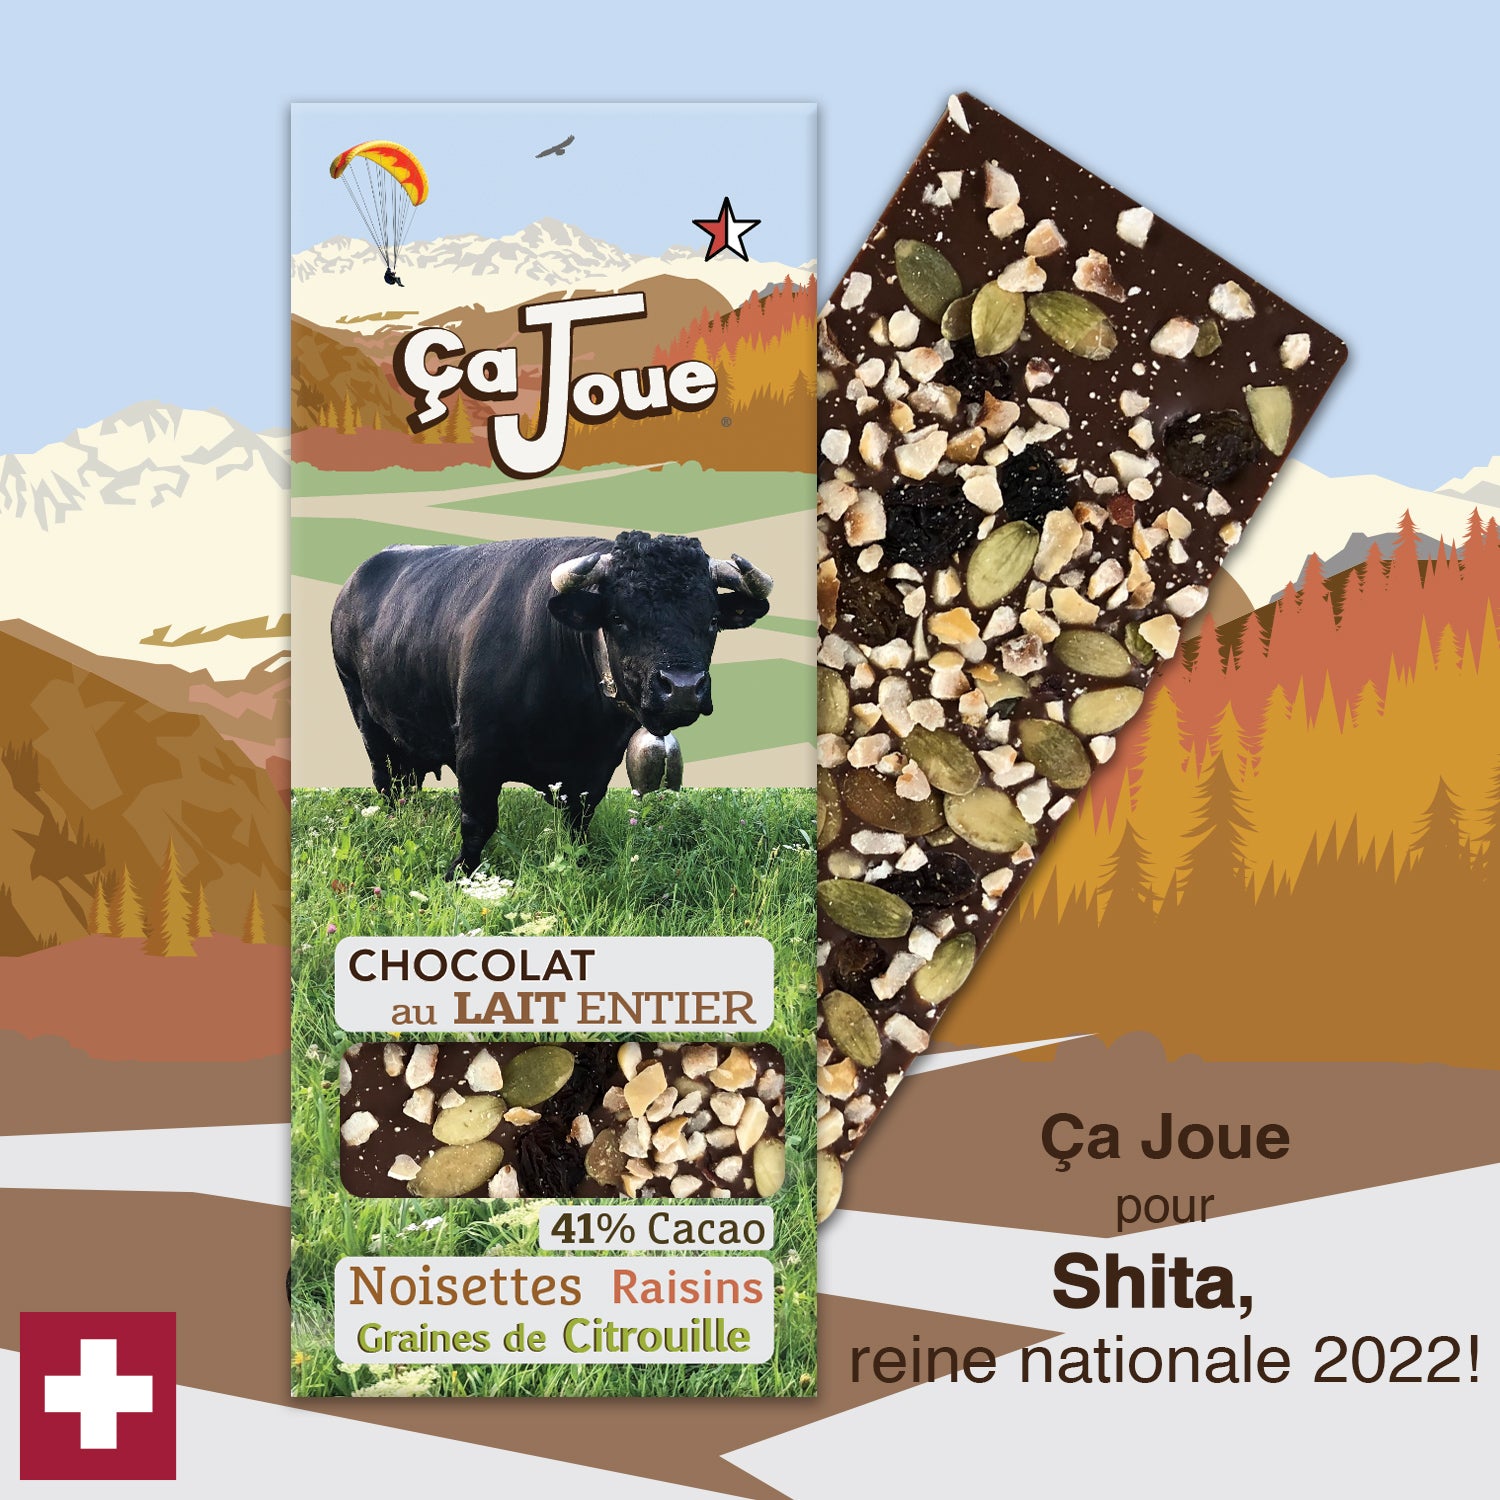 Ça Joue for Queen Shita (Ref-BL10) Milk Chocolate from Val de Bagnes